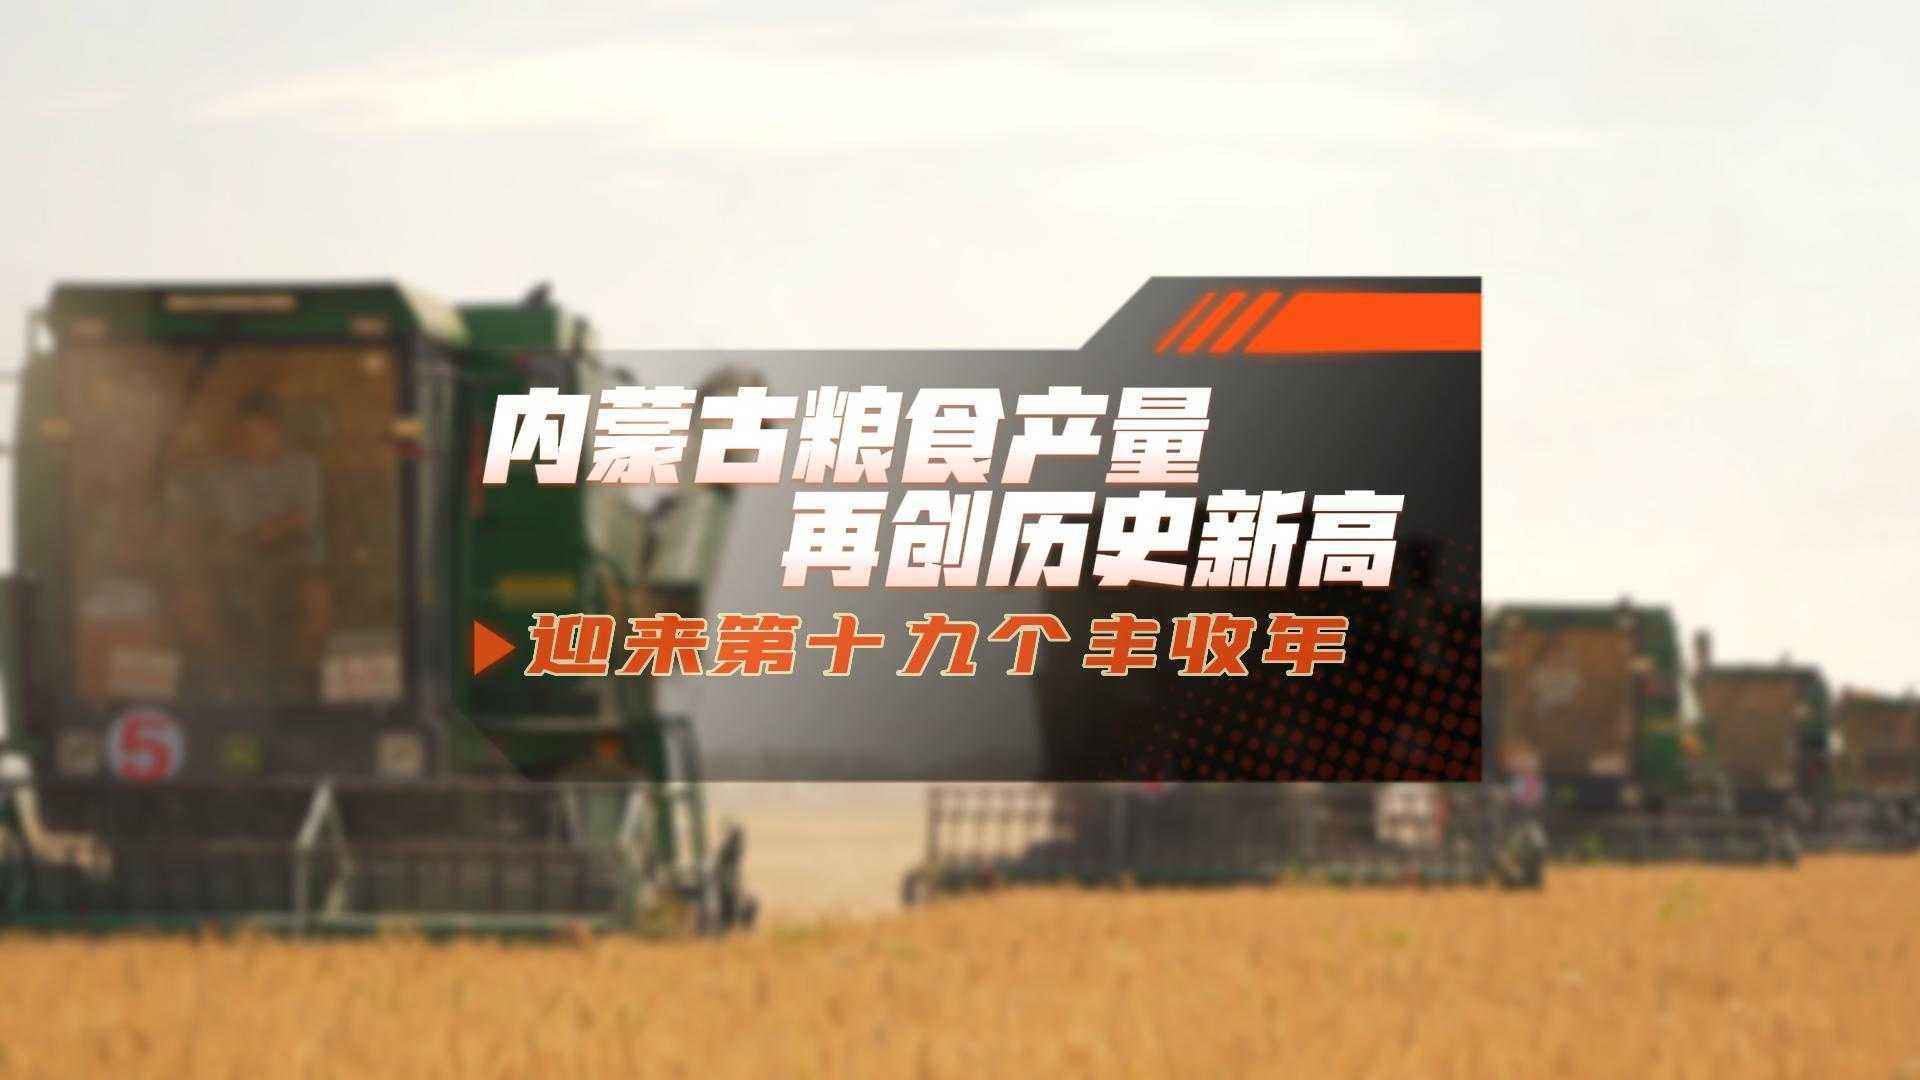 内蒙古粮食产量 再创历史新高 迎来第十九个丰收年